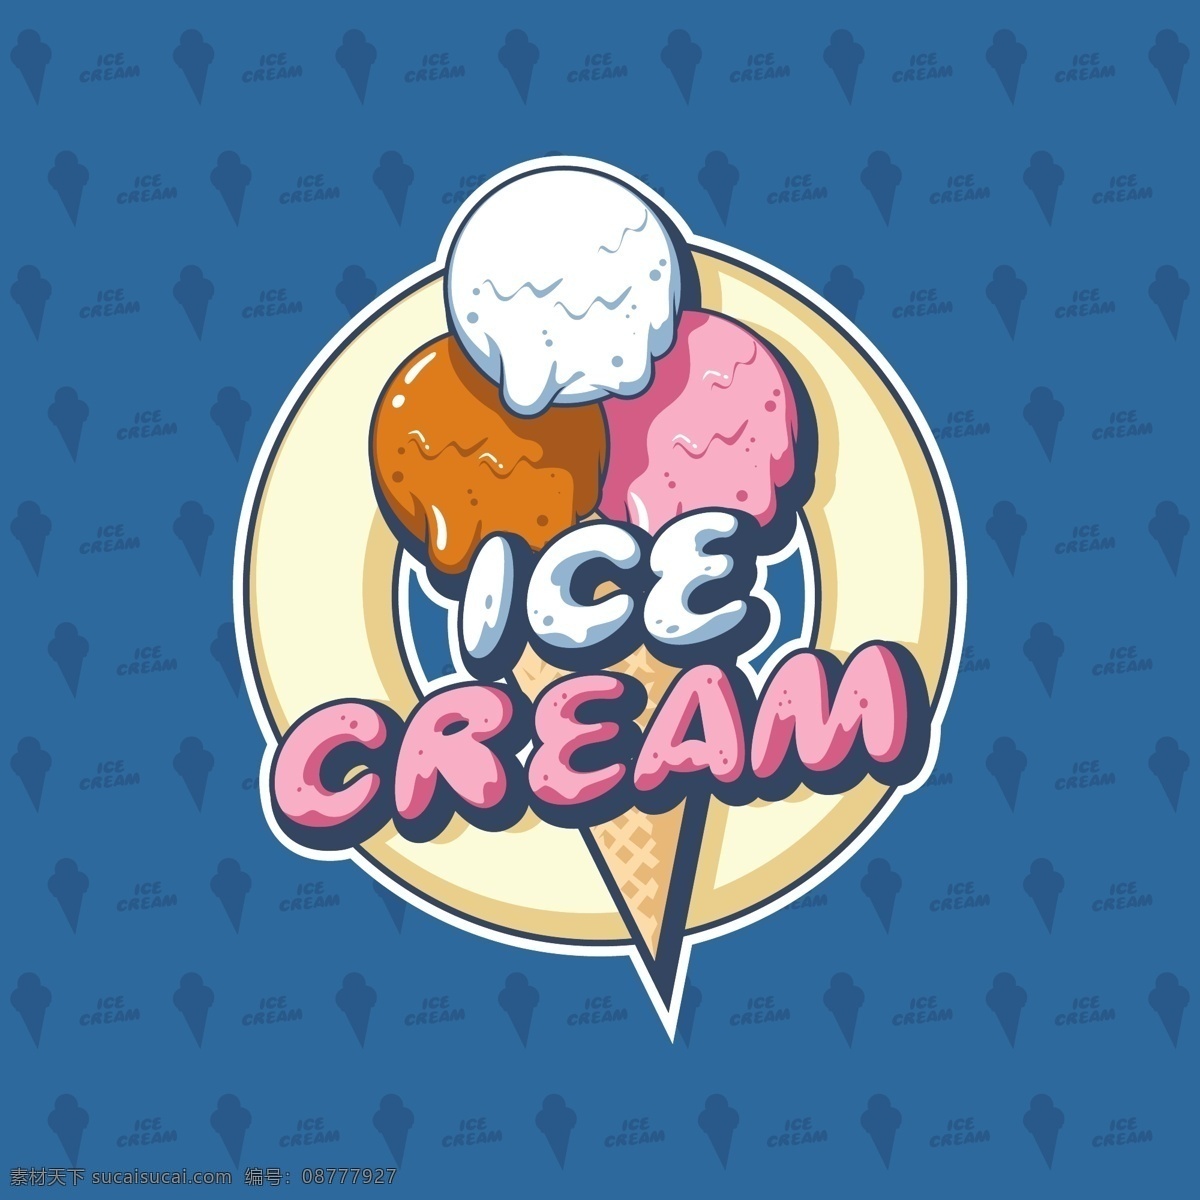 冰淇淋 甜筒 商店 标志 冰淇淋标志 美食 矢量素材 手绘 手绘插画 手绘美食